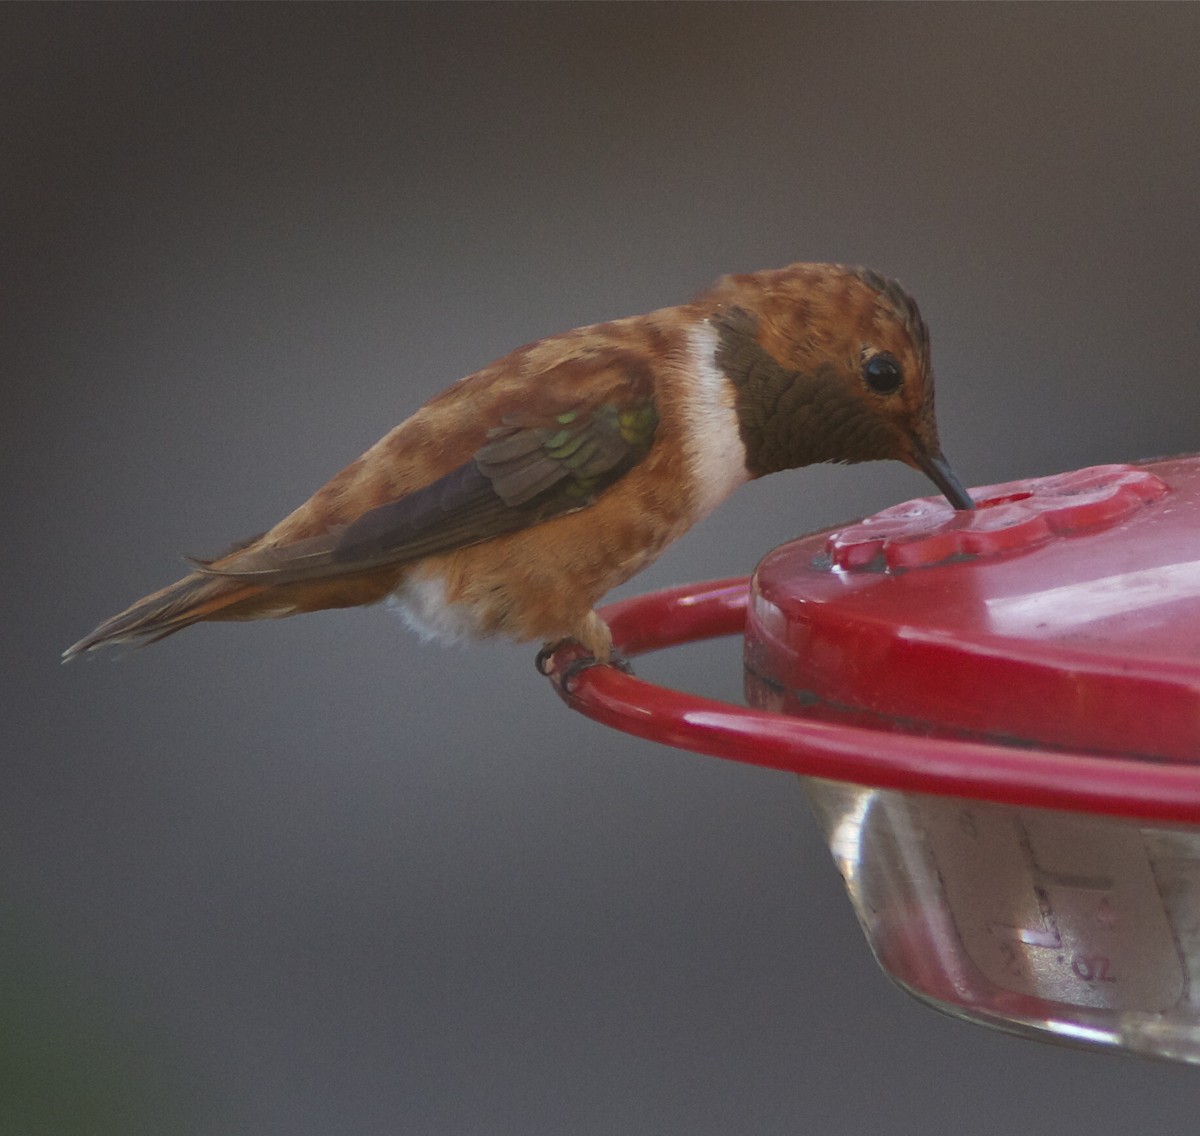 Rufous Hummingbird - Holly Merker